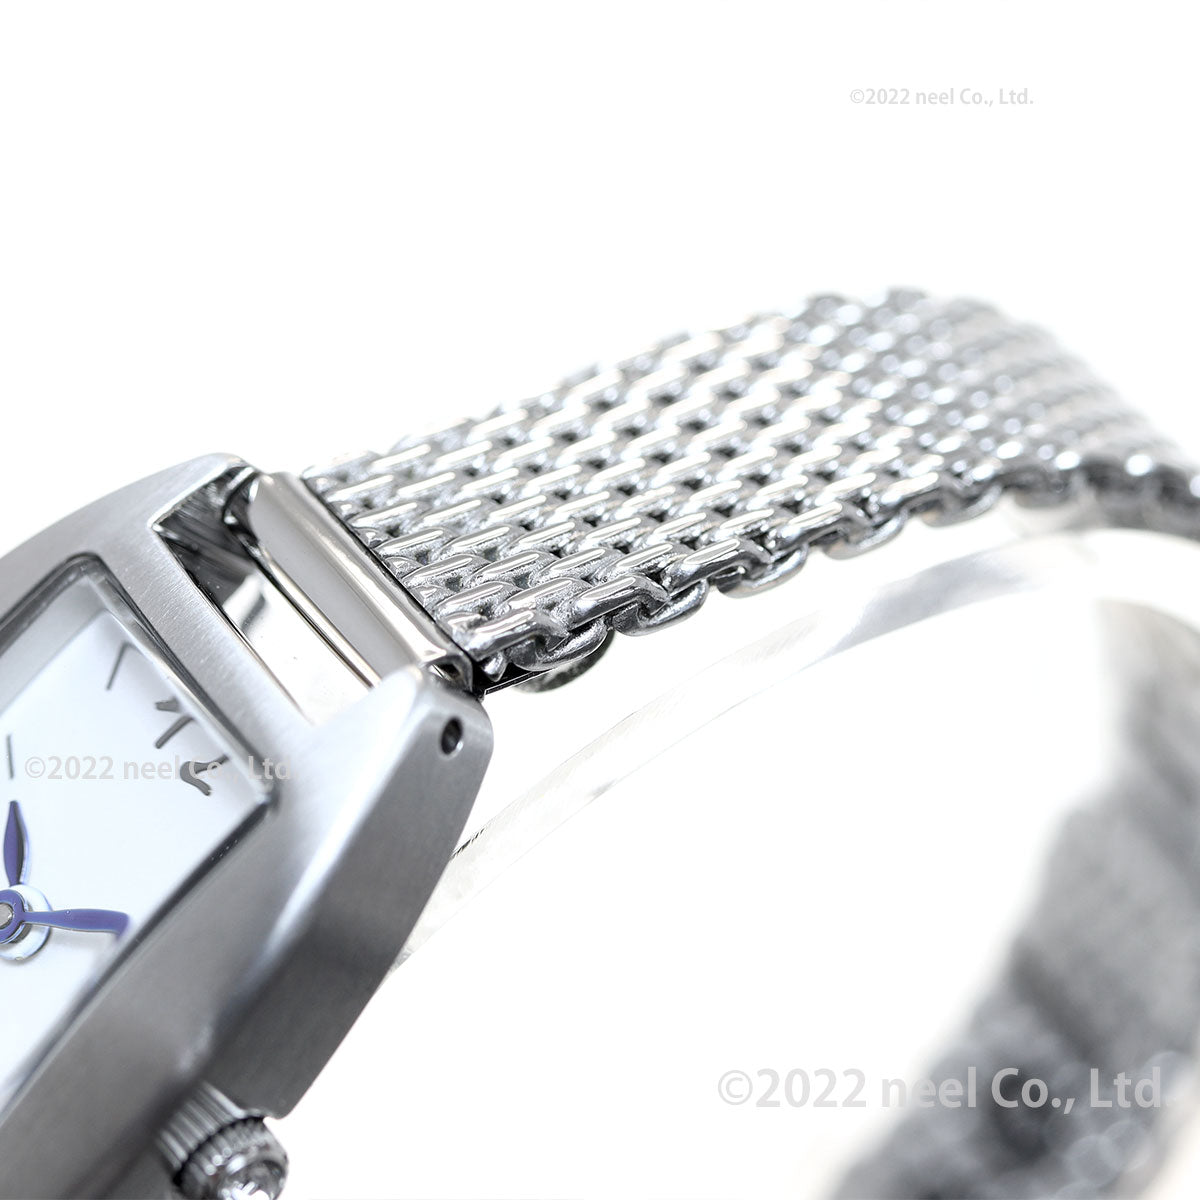 アニエスベー 時計 レディース FCSK744 give love 限定モデル 腕時計 agnes b. マルチェロ Marcello トノーモデル